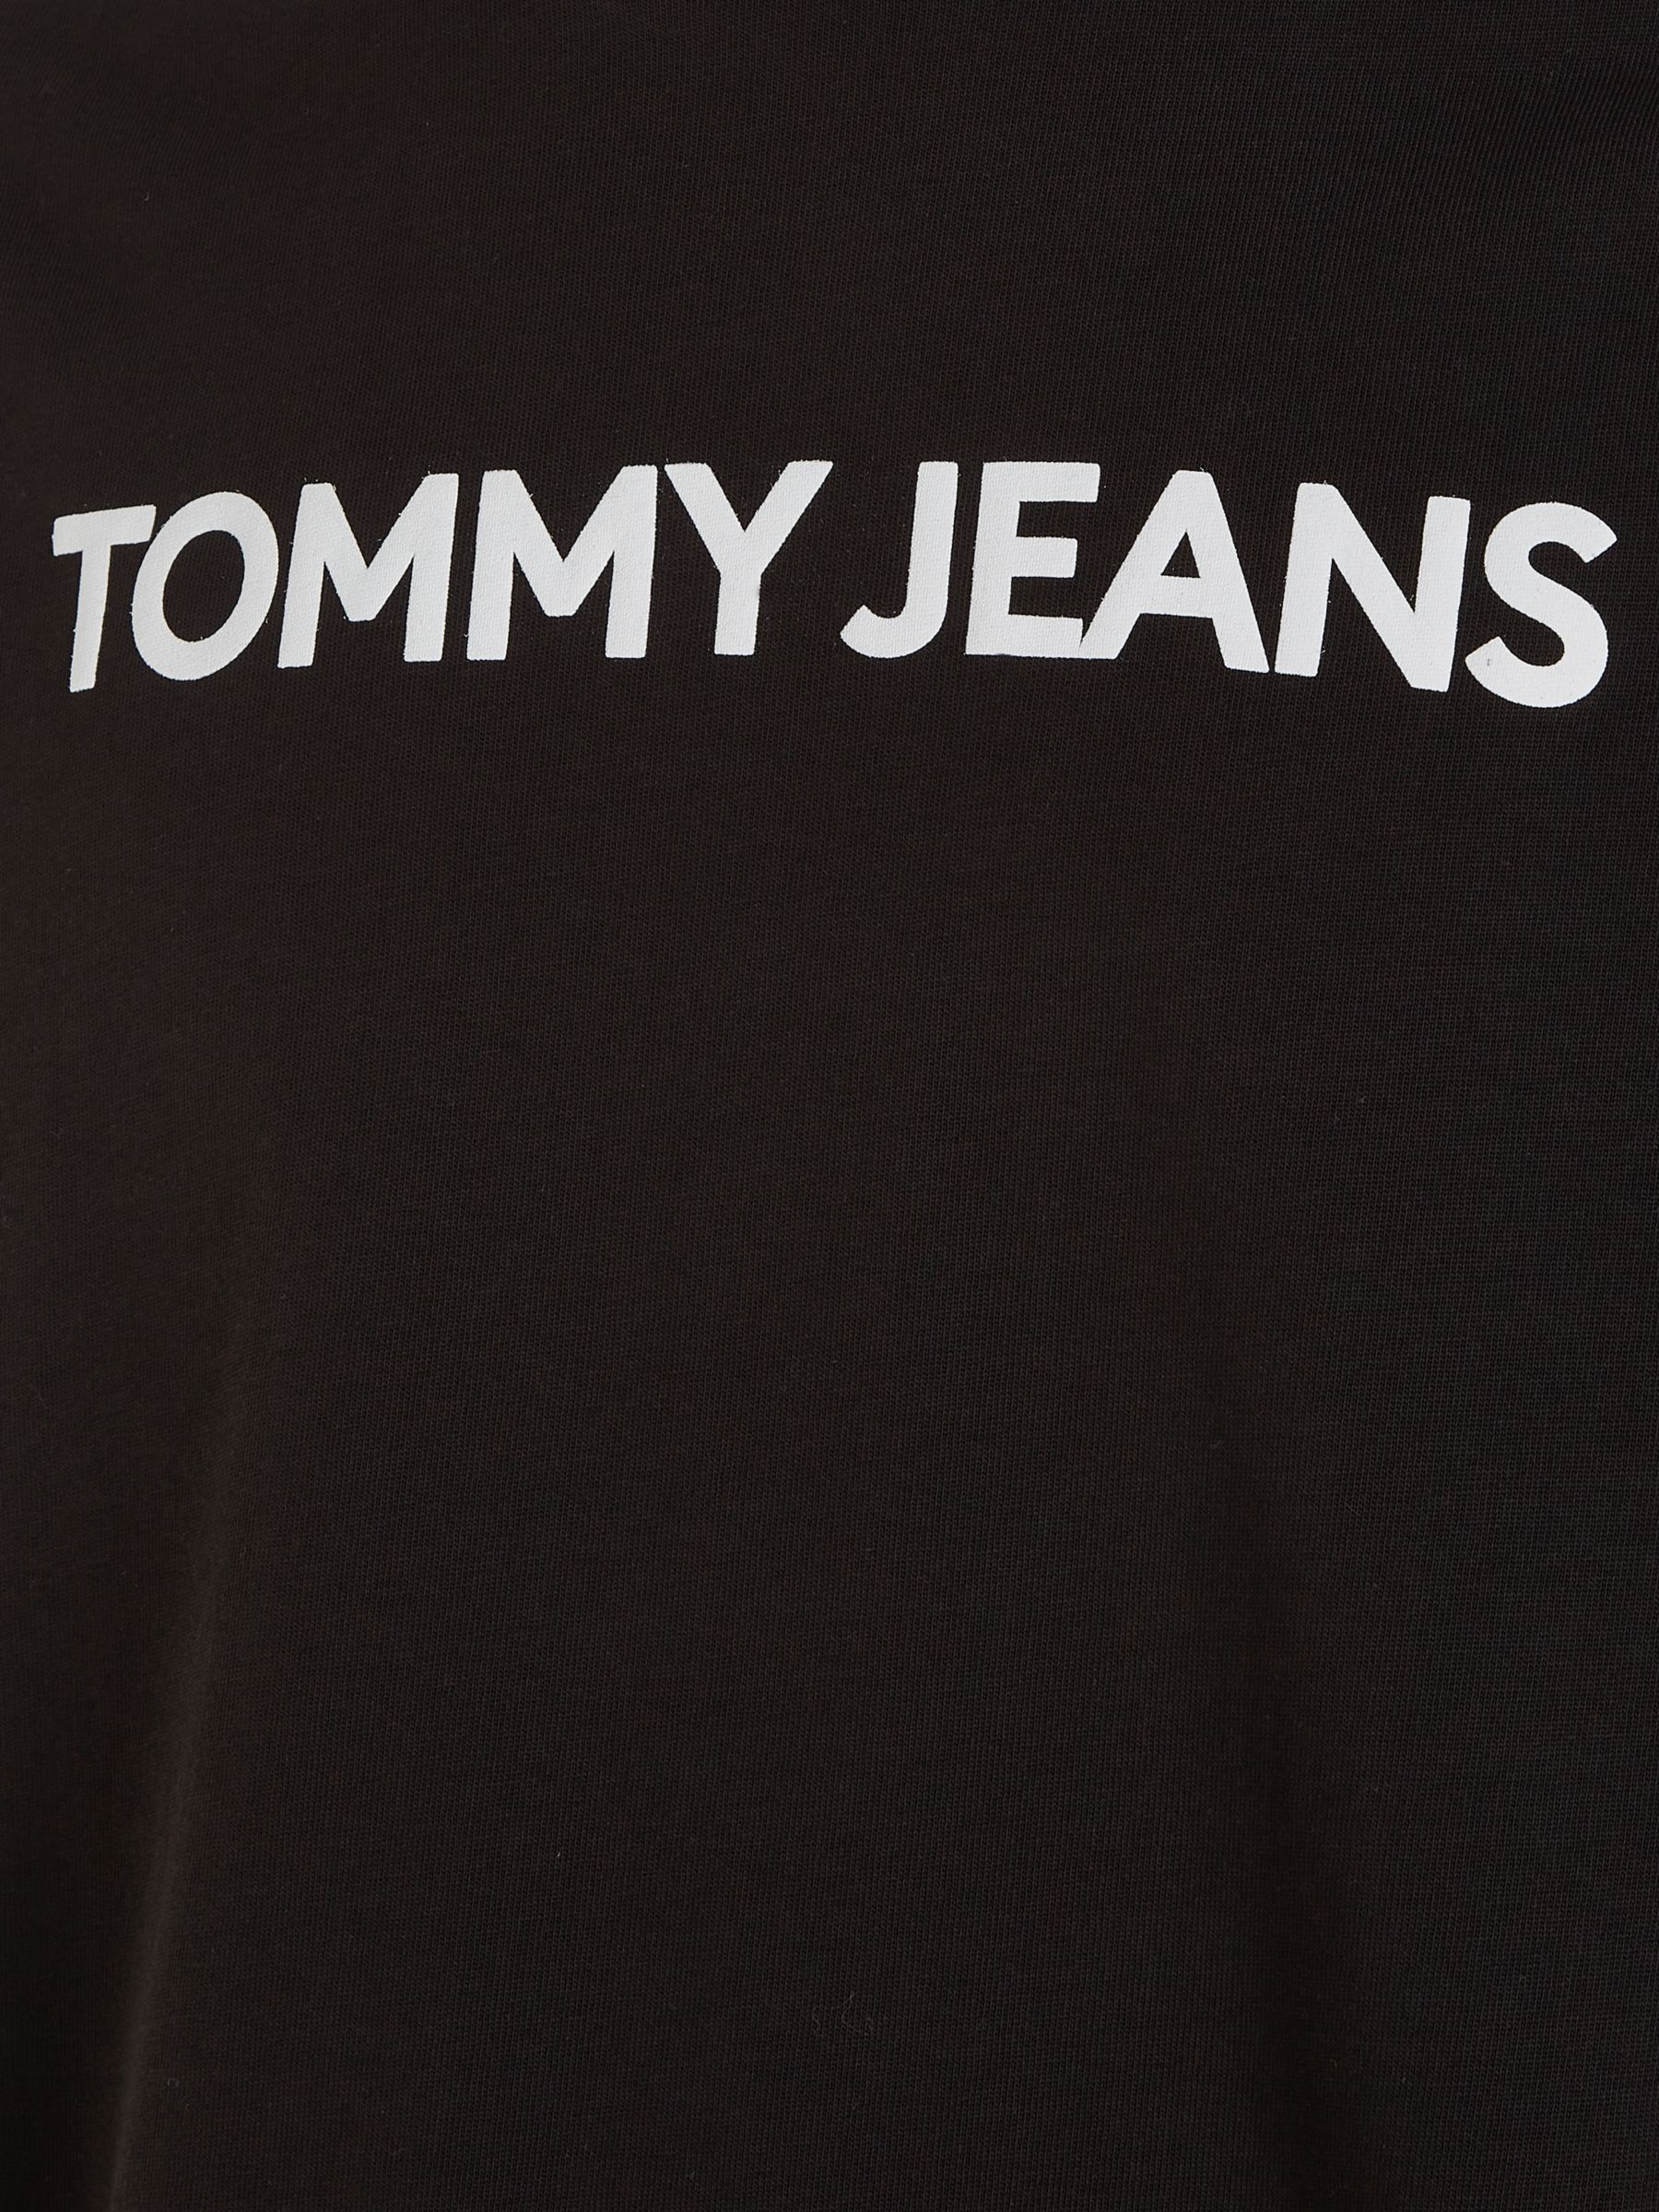 Tommy Jeans Oversized T-Shirt, Black, XXL